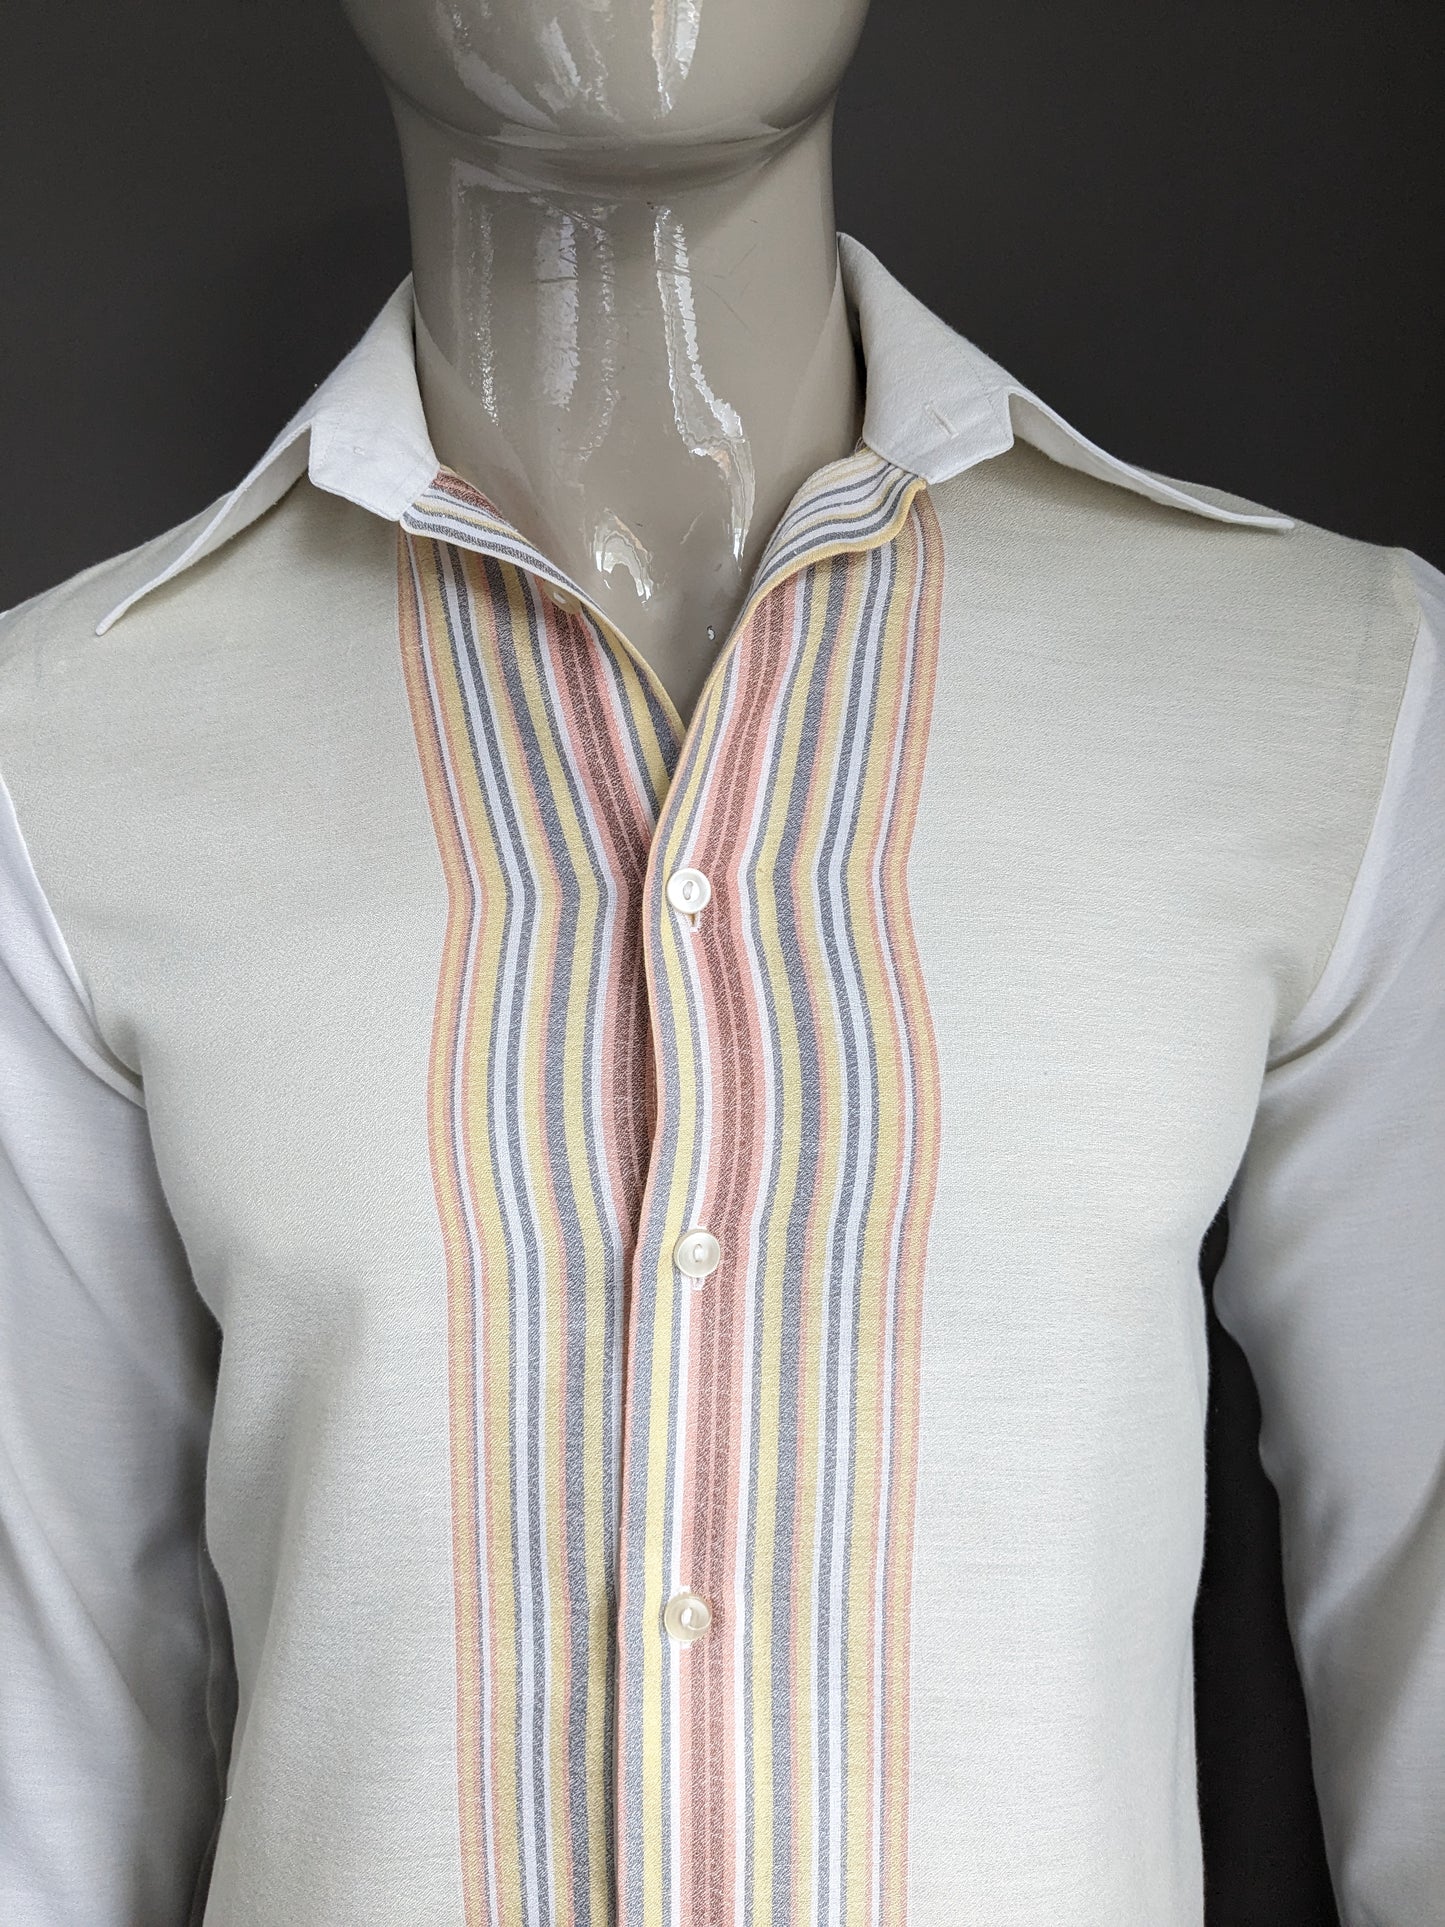 Vintage 70's overhemd met puntkraag. Beige Geel Grijs Roze gekleurd. Maat M.